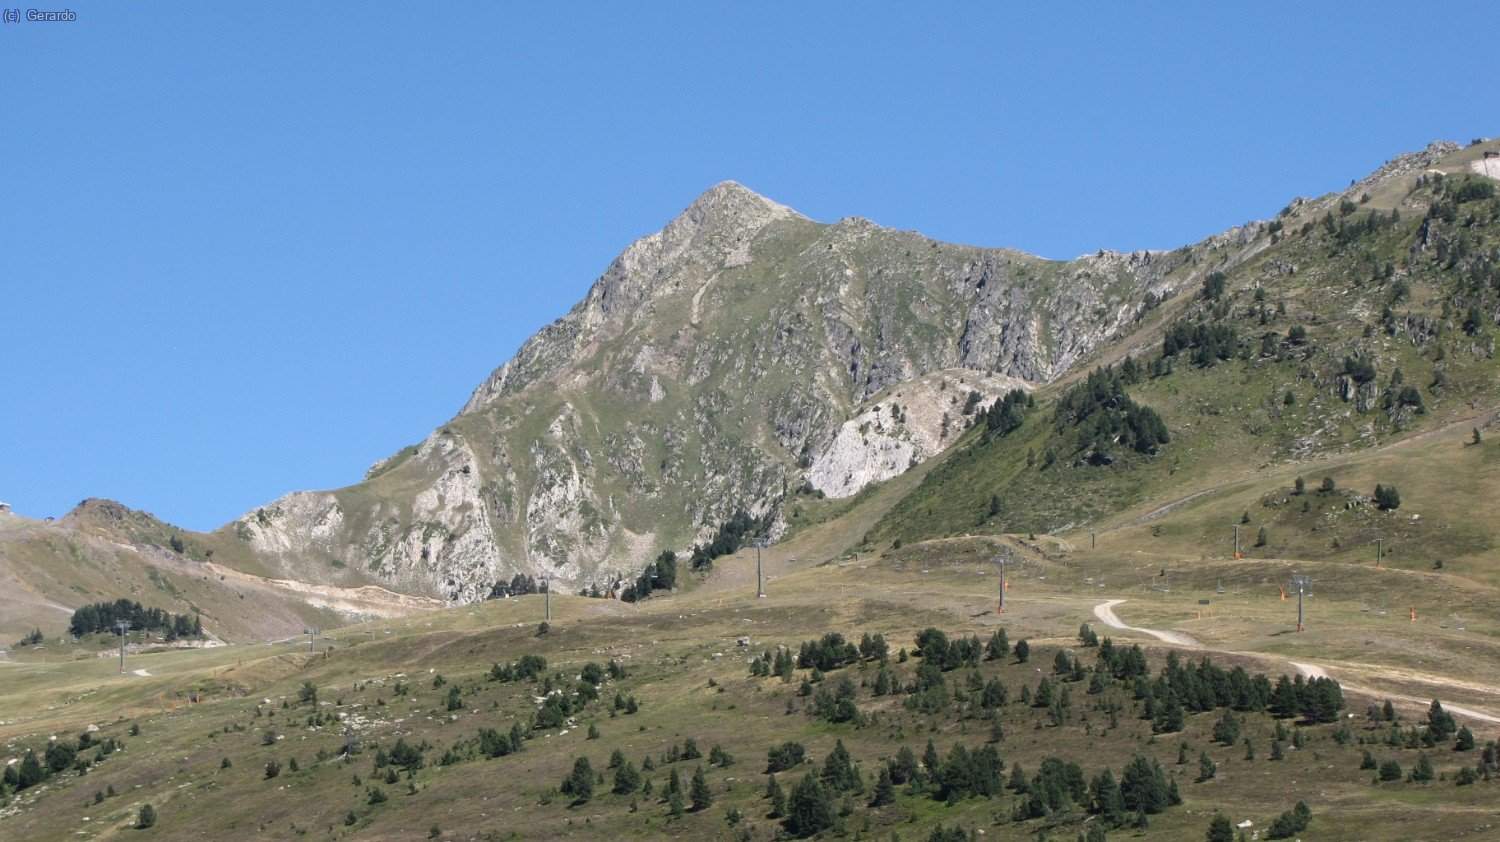 Detalle del Tuc de Baciver, nuestro pico de hoy, desde el Pla de Beret.